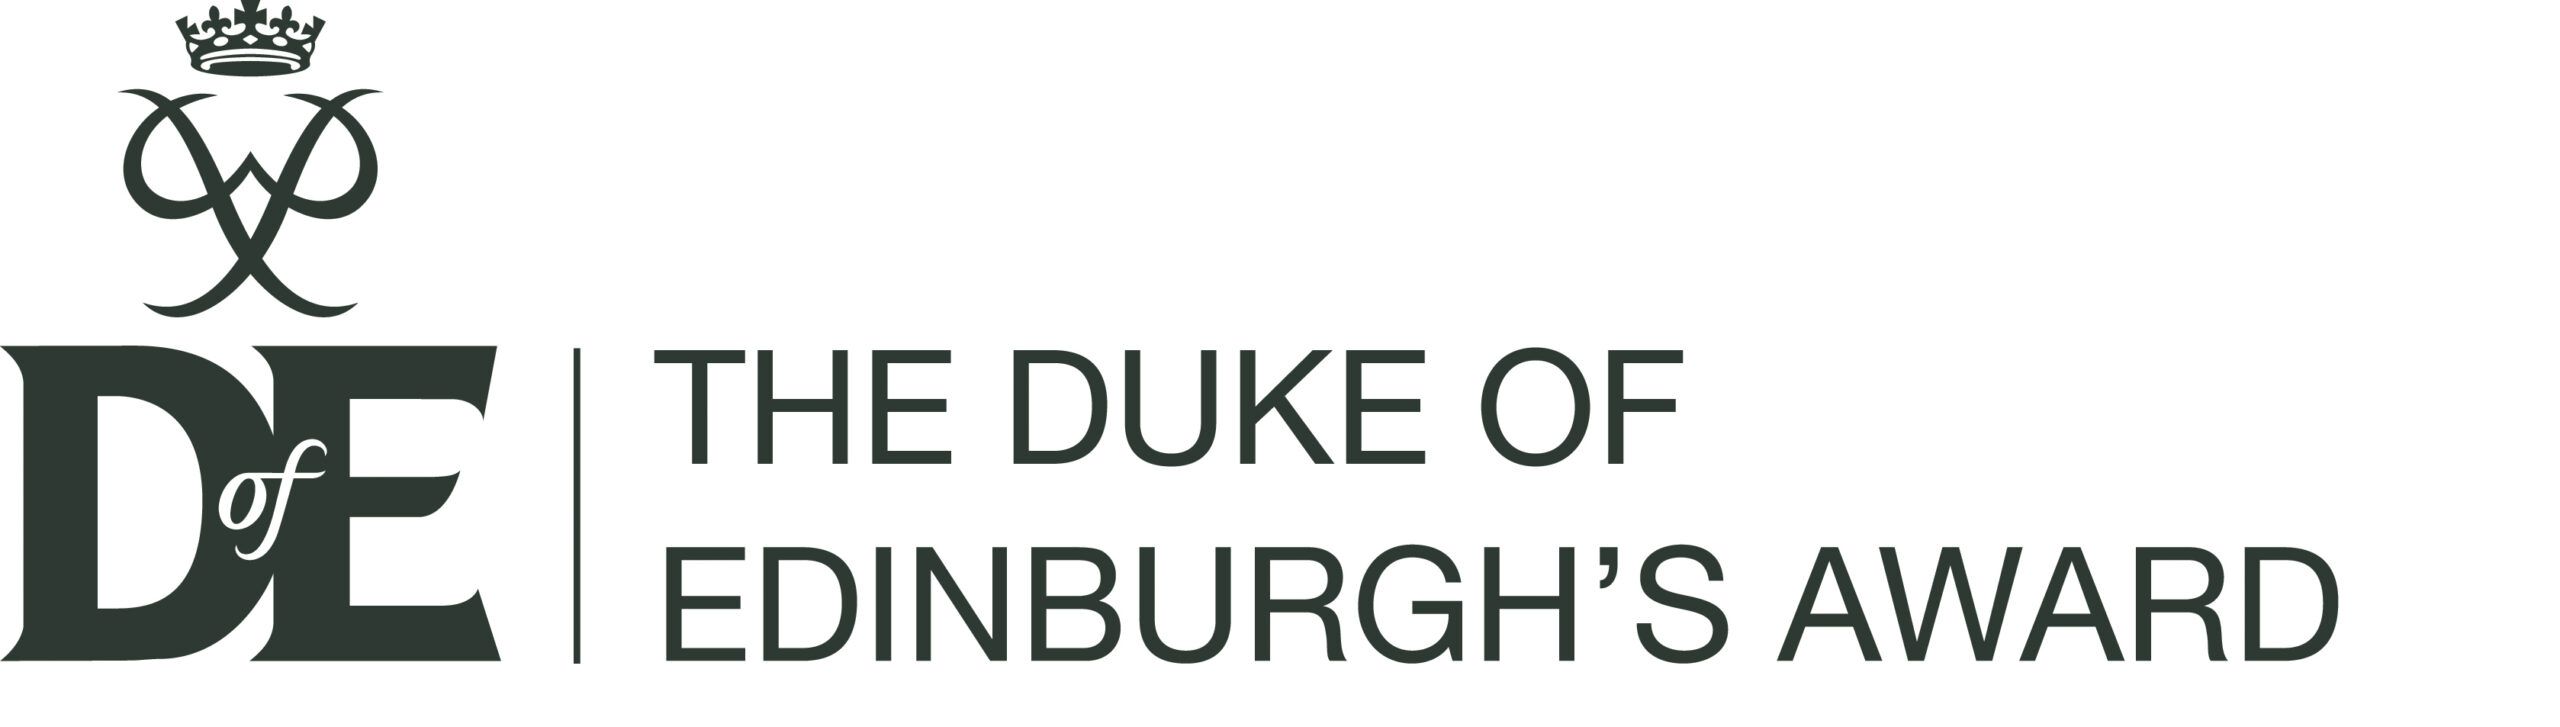 DofE Duke of Edinburgh's AwardFull logo - gunmetal